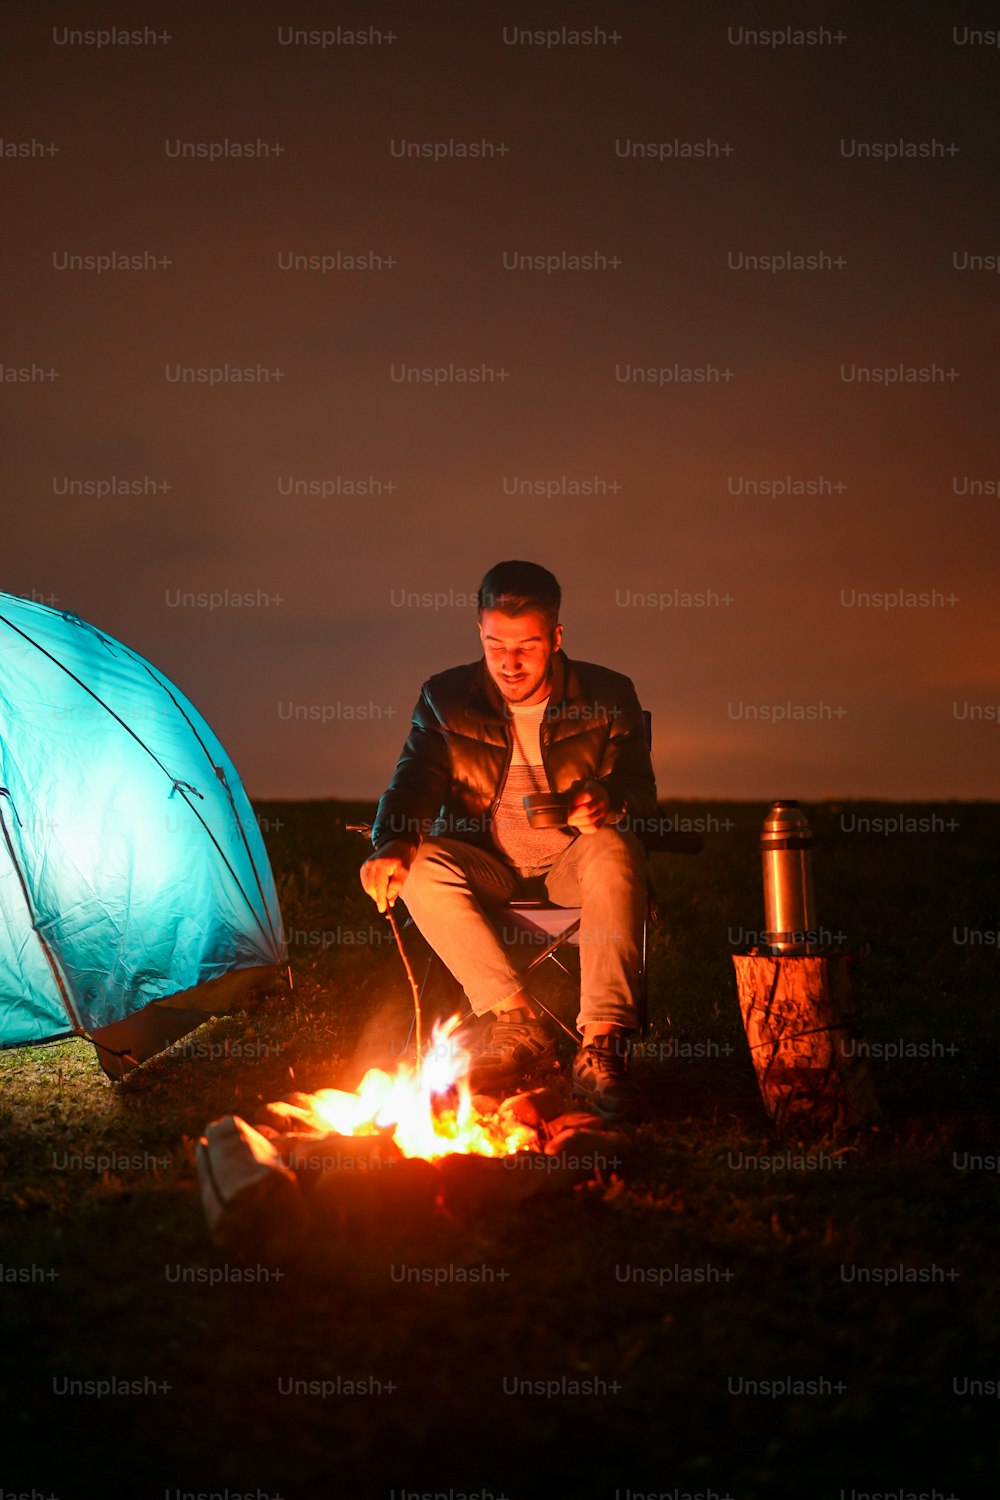 텐트 옆 모닥불 앞에 앉아 있는 남자